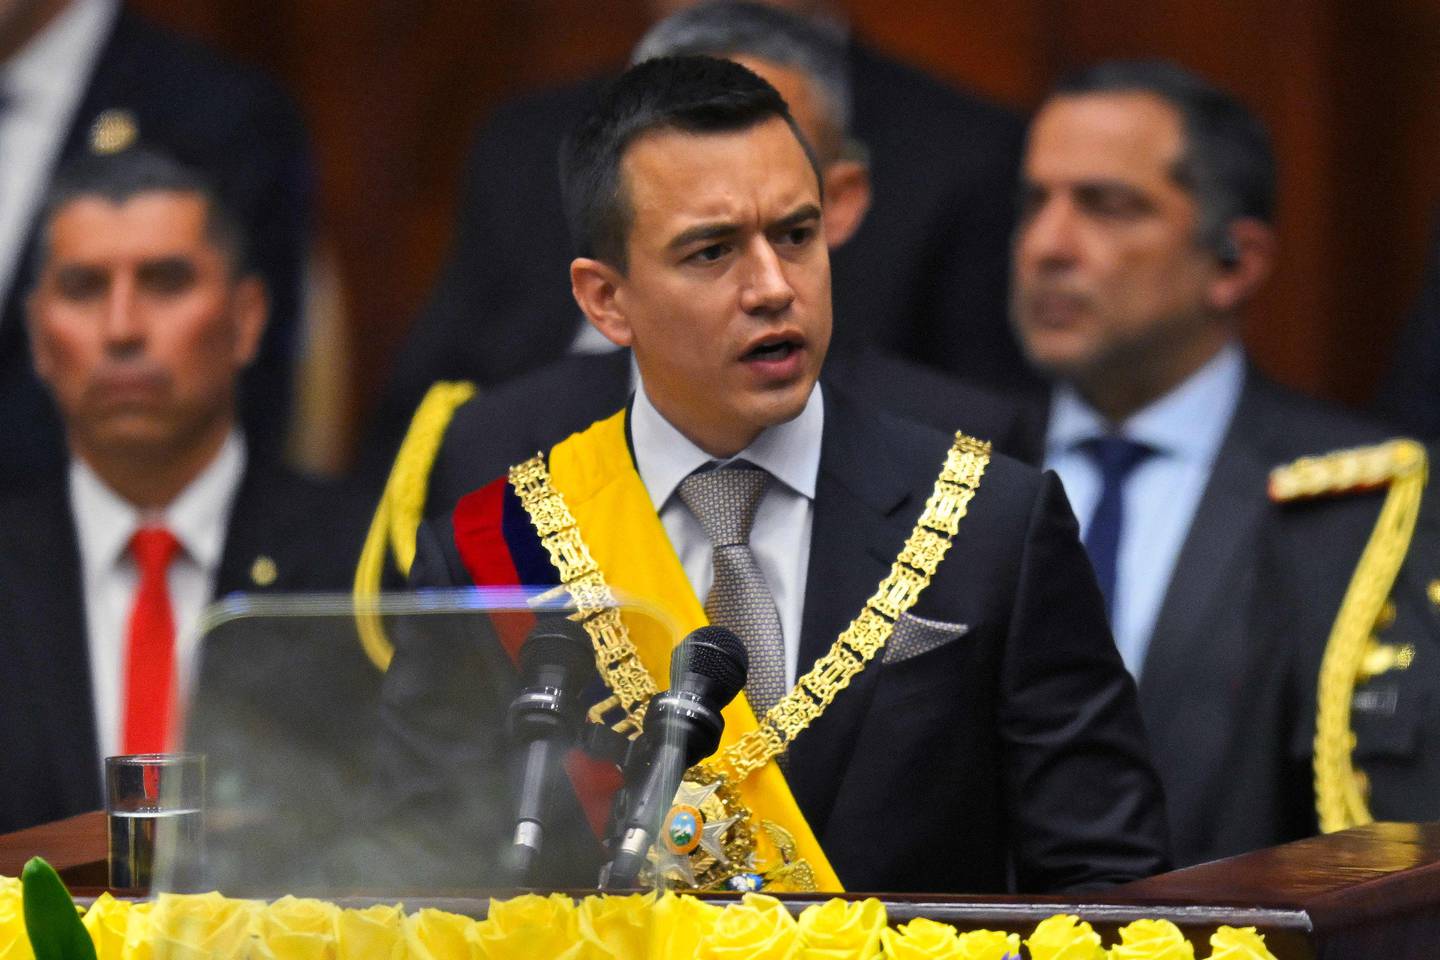 El nuevo presidente de Ecuador, Daniel Noboa, pronuncia su primer discurso durante su toma de posesión en la Asamblea Nacional en Quito el 23 de noviembre de 2023.